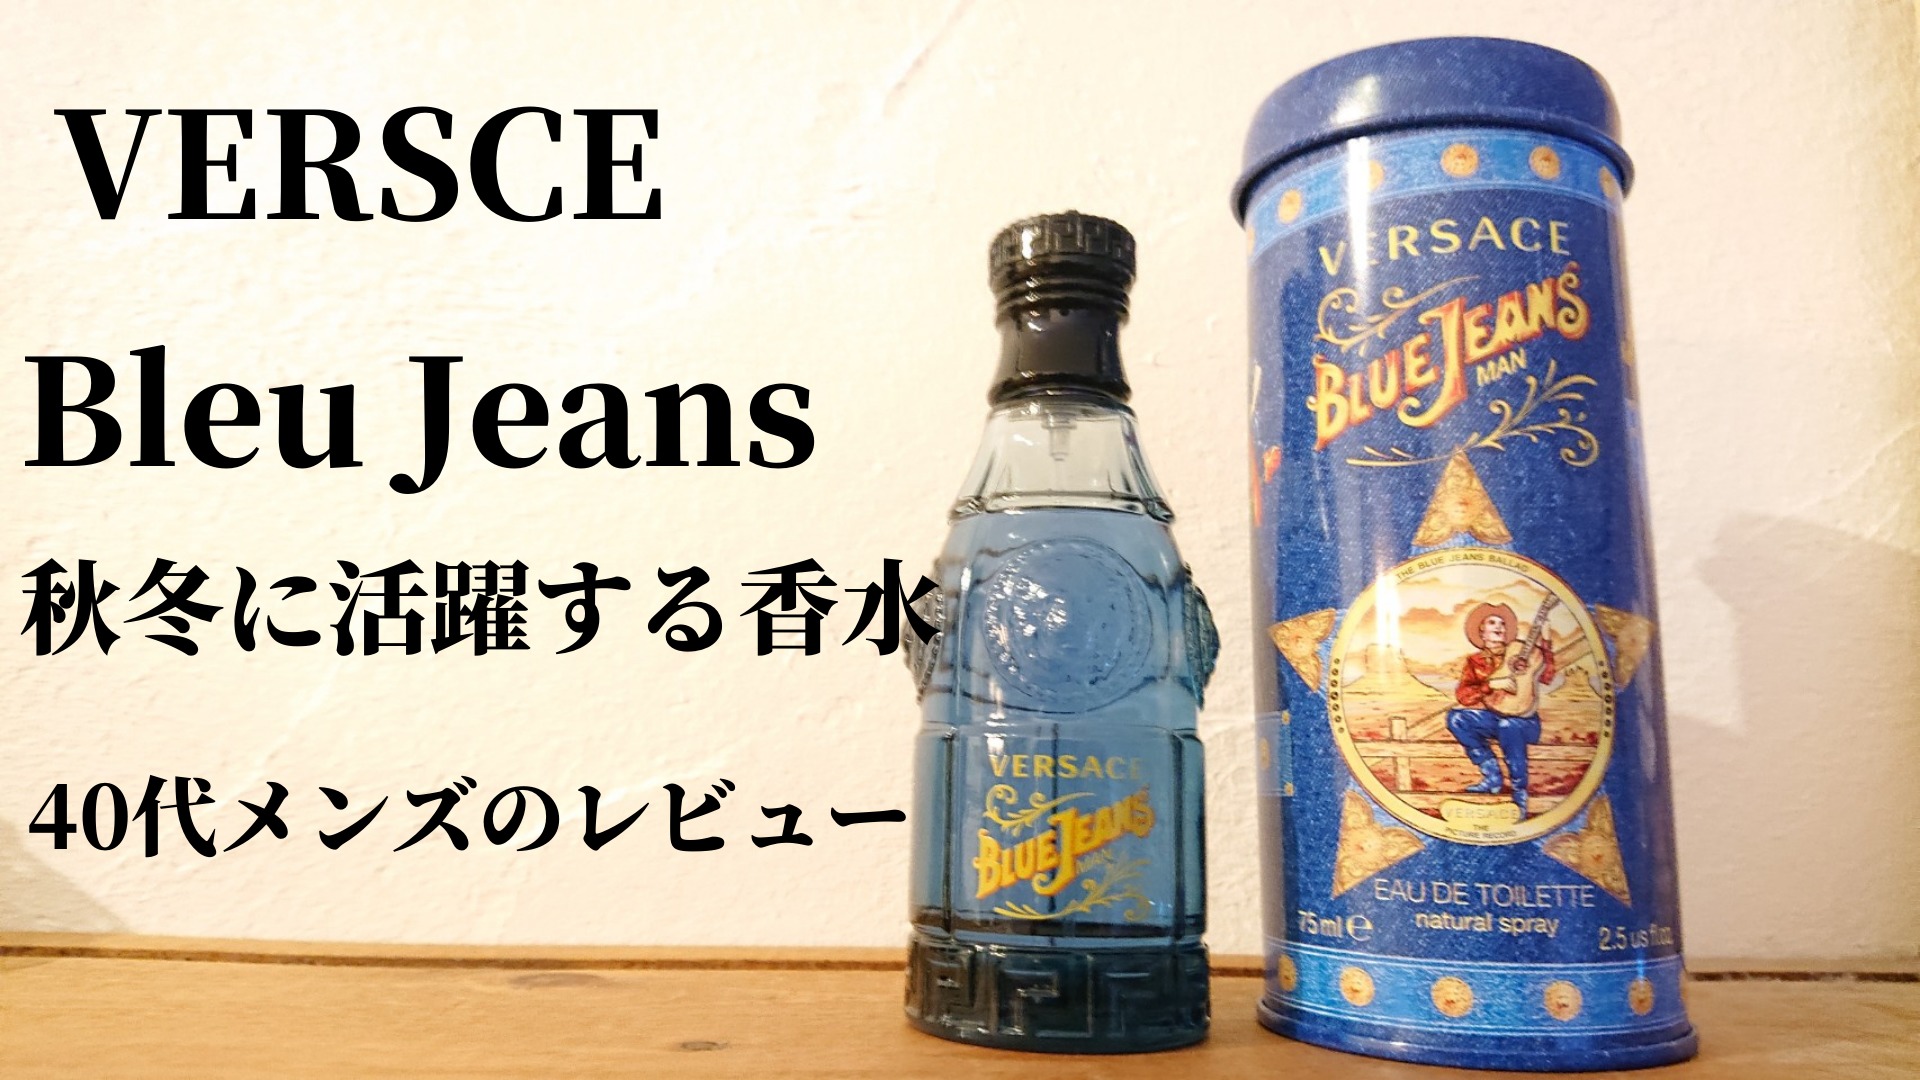 VERSCE-blue-jeans